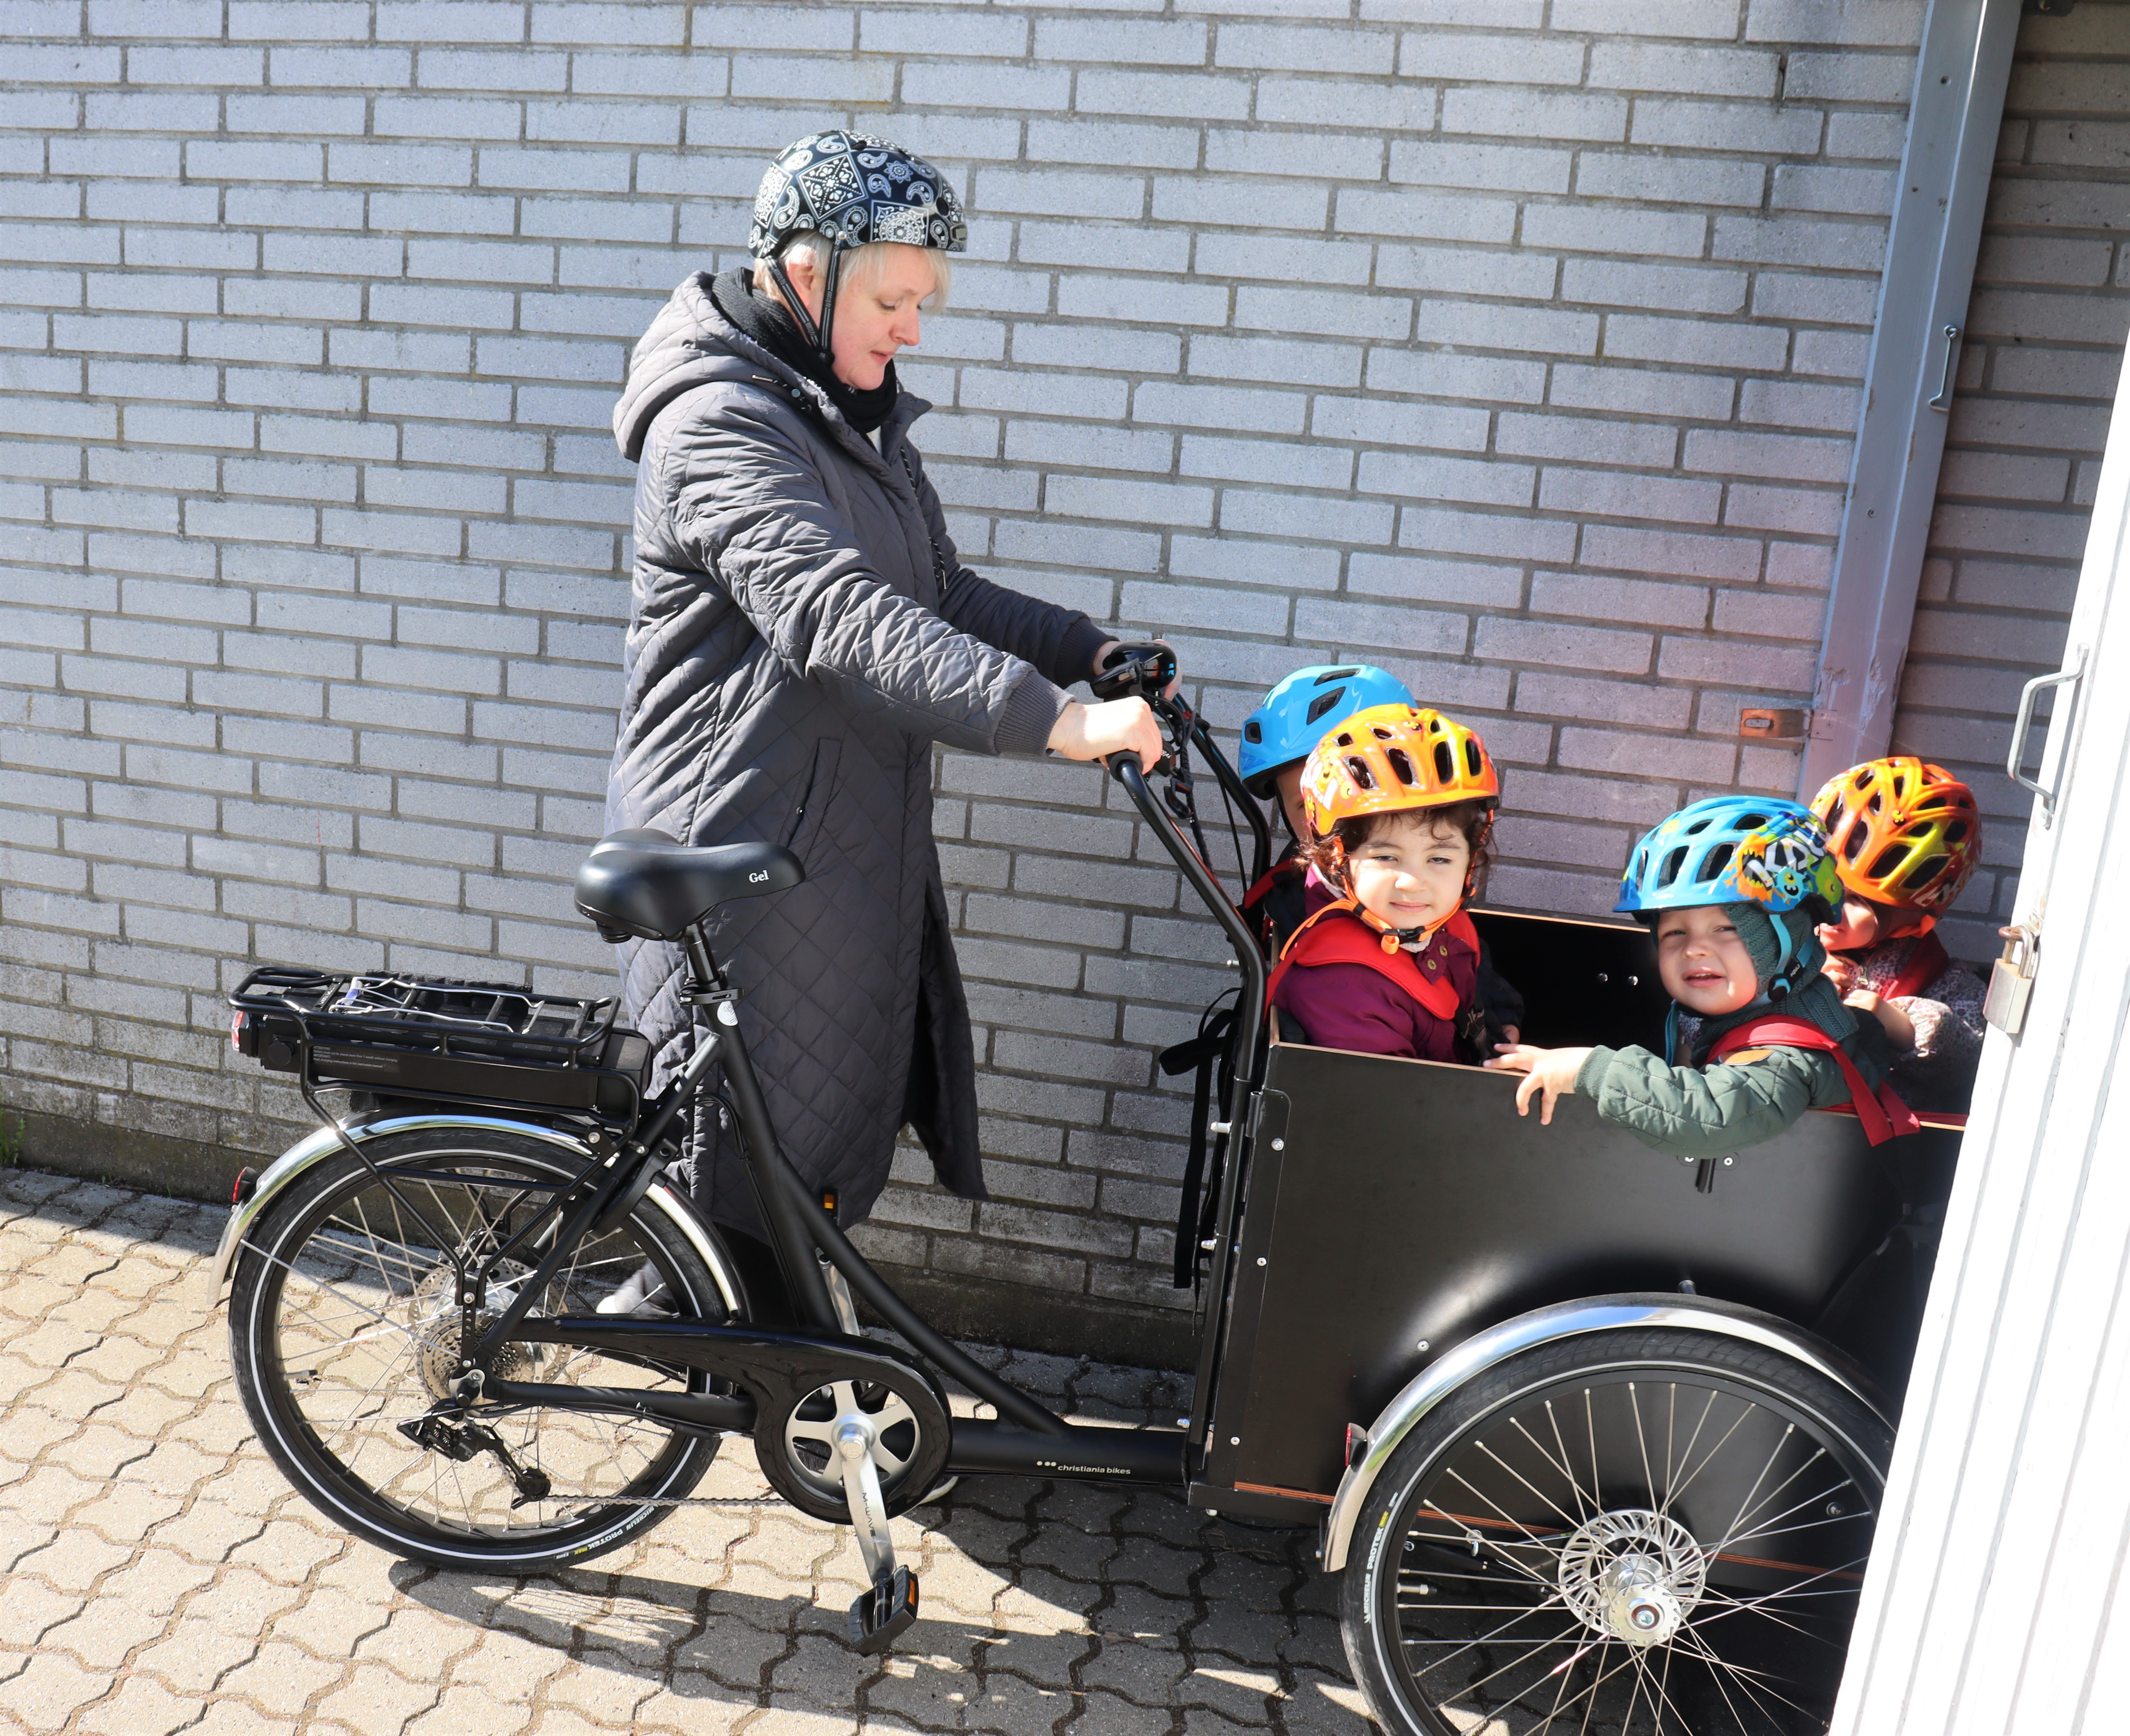 Pædagog cykler med børn i ladcykel